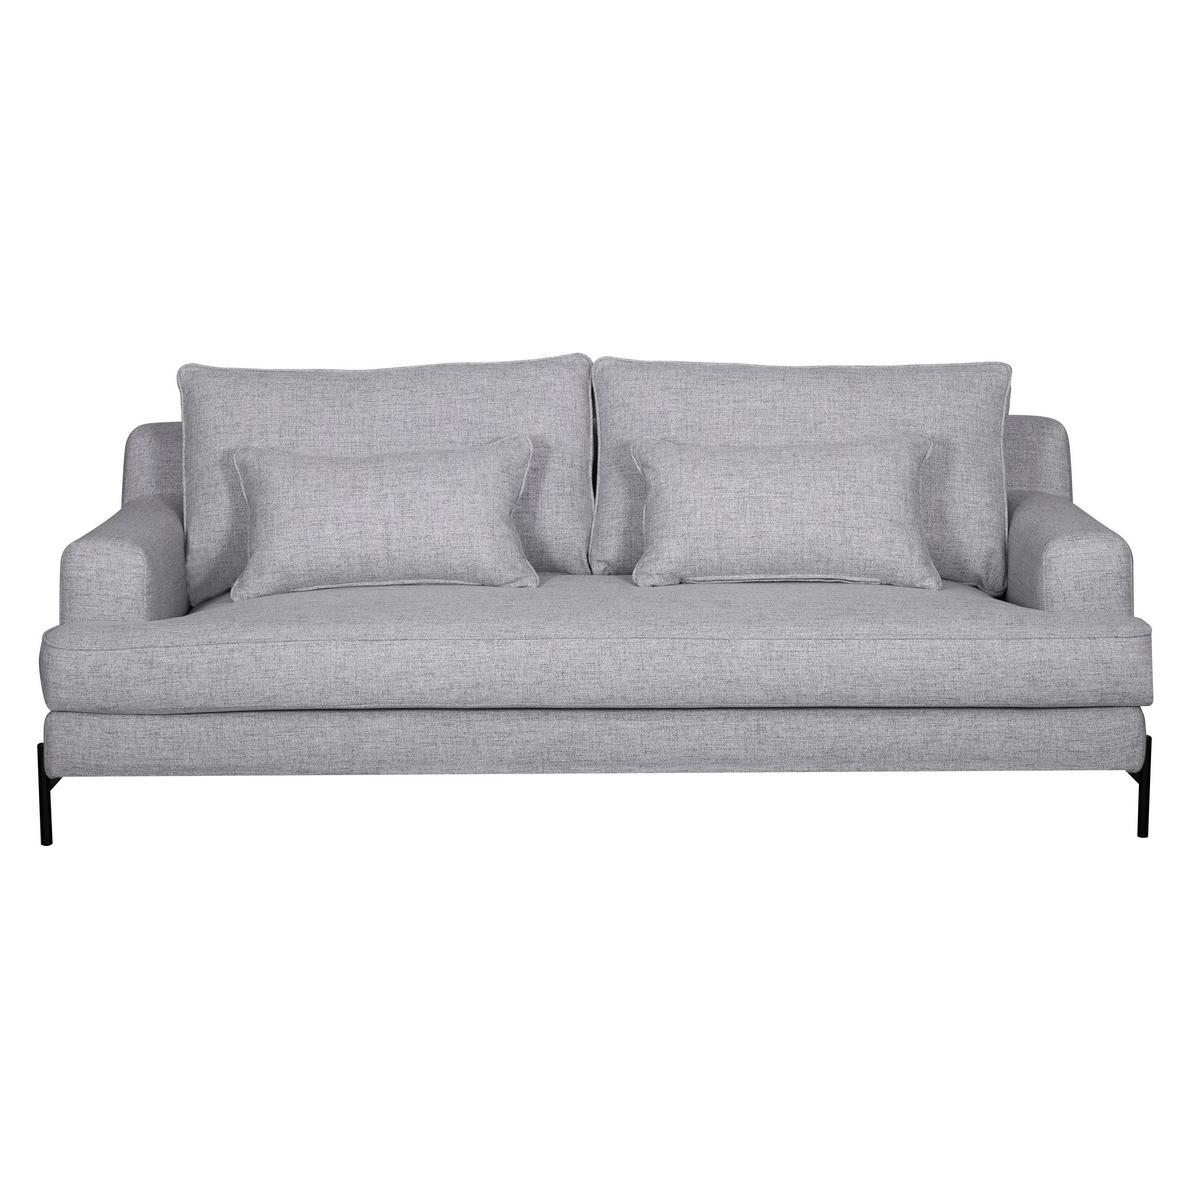 Canapé design 4 places en tissu gris chiné et métal noir PUCHKINE vue1